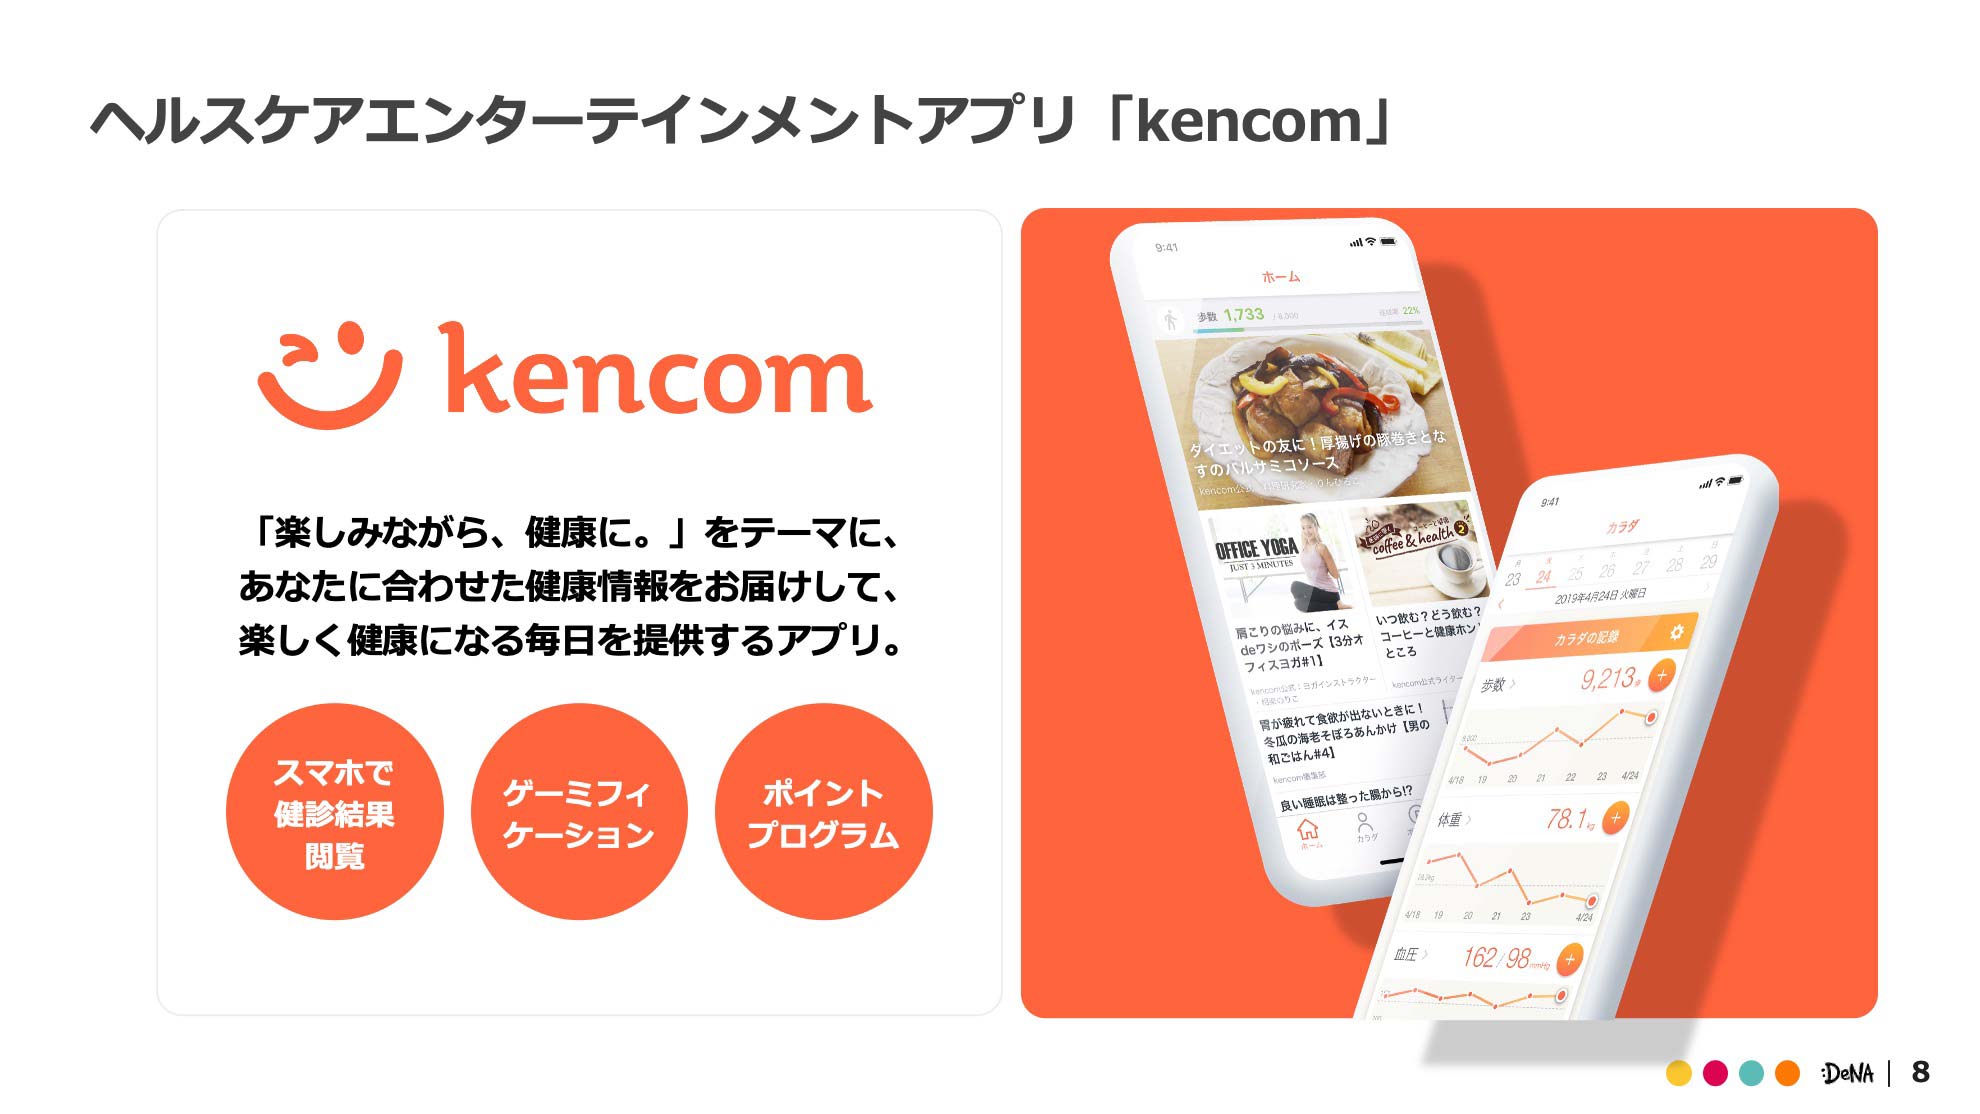 ヘルスケアエンターテインメントアプリ「kencom」